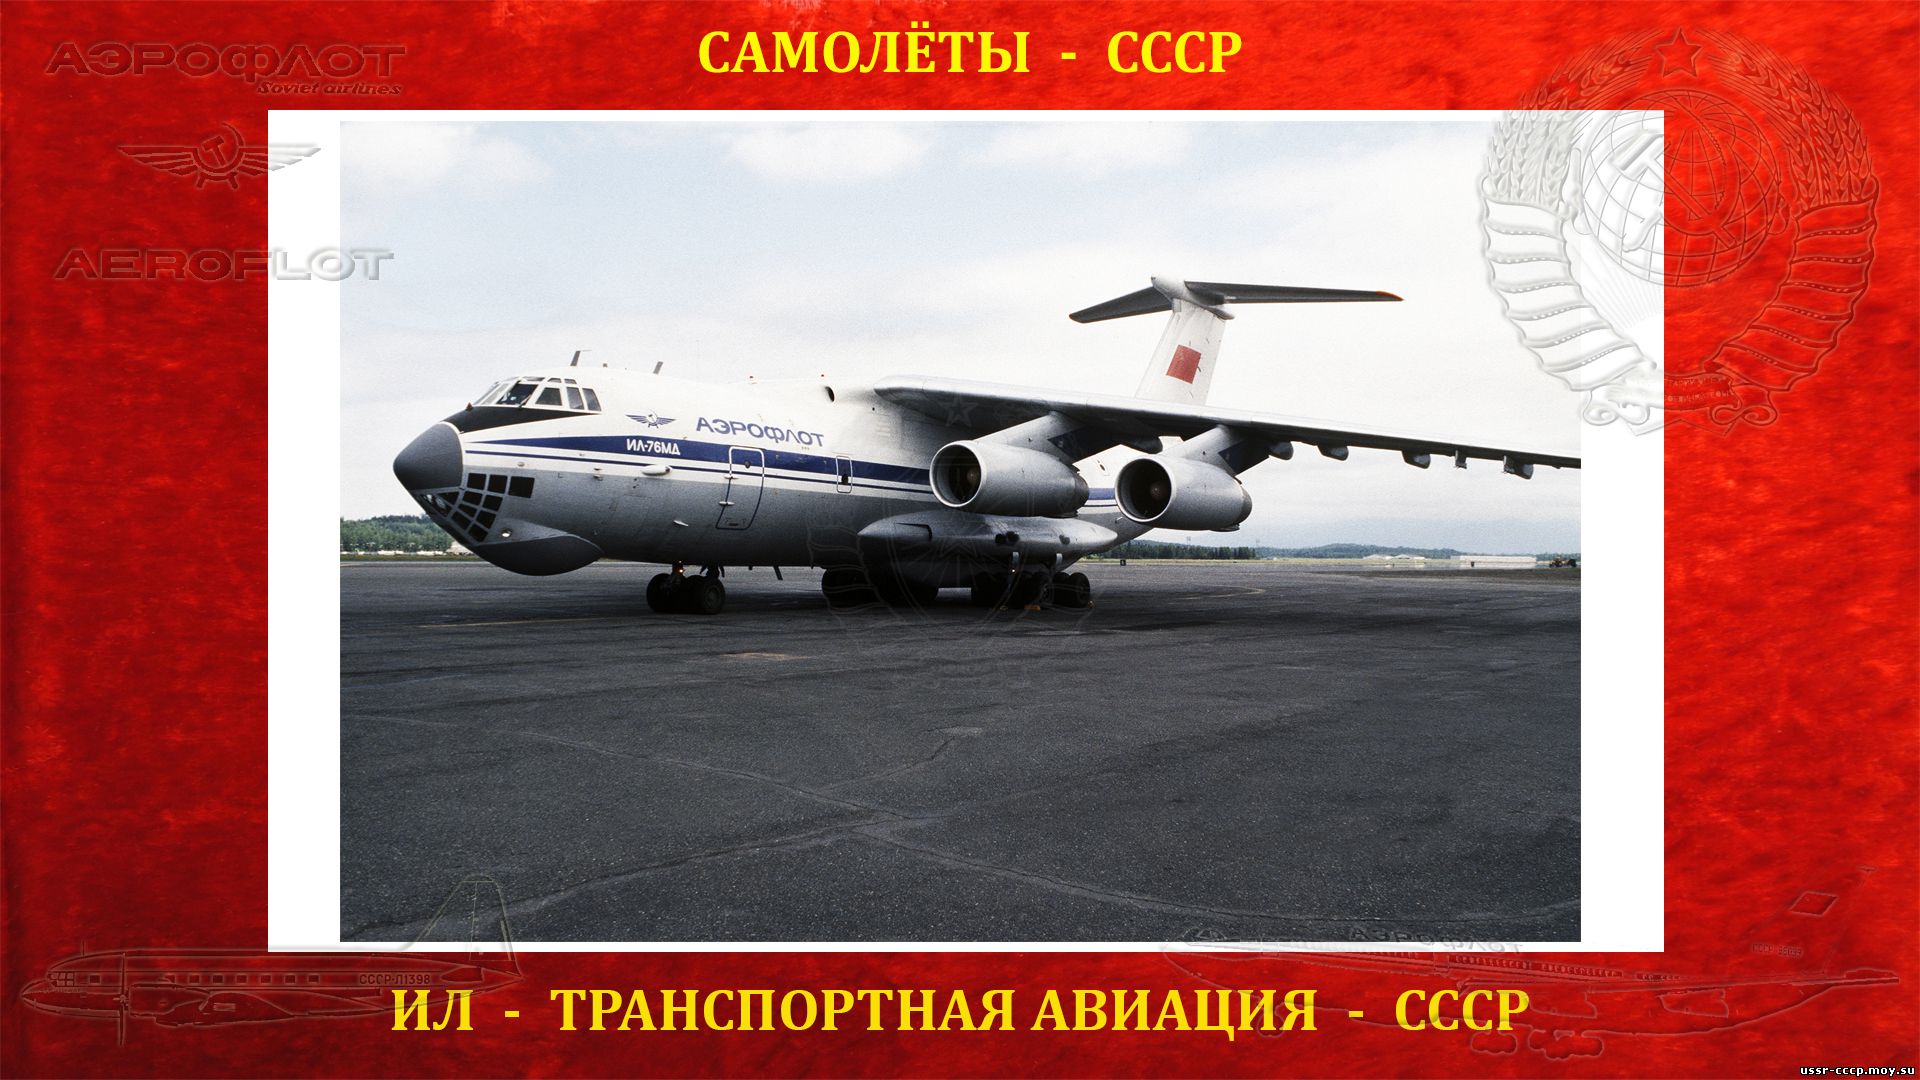 Ил-76 - Советский военно-транспортный тяжёлый самолёт - Первый полёт 25.03.1971 года 